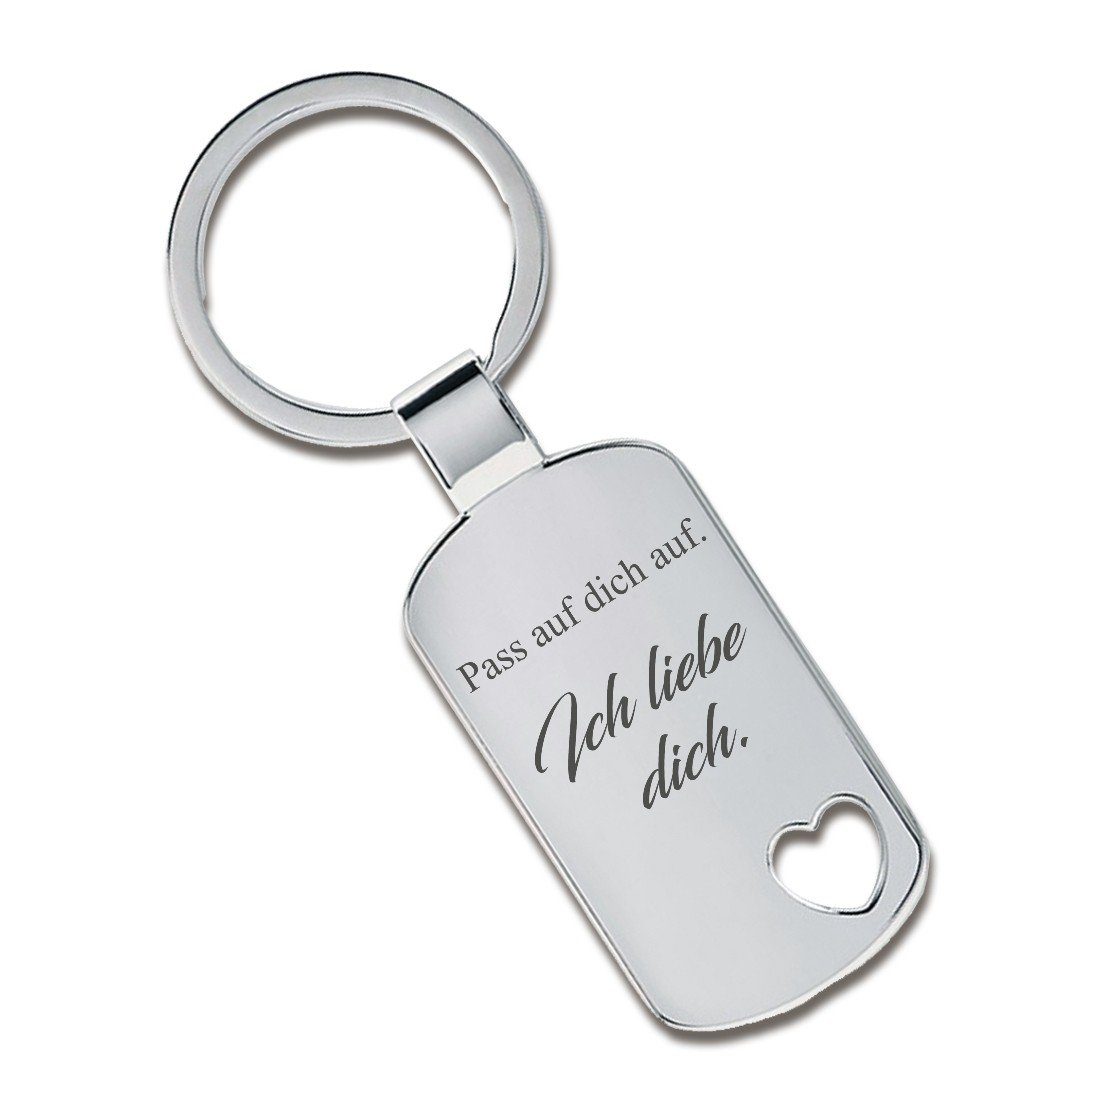 Lieblingsmensch Schlüsselanhänger Pass auf dich auf. Ich liebe dich. - ein tolles Geschenk (Schlüsselanhänger mit Gravur, inklusive Schlüsselring), Jubiläum